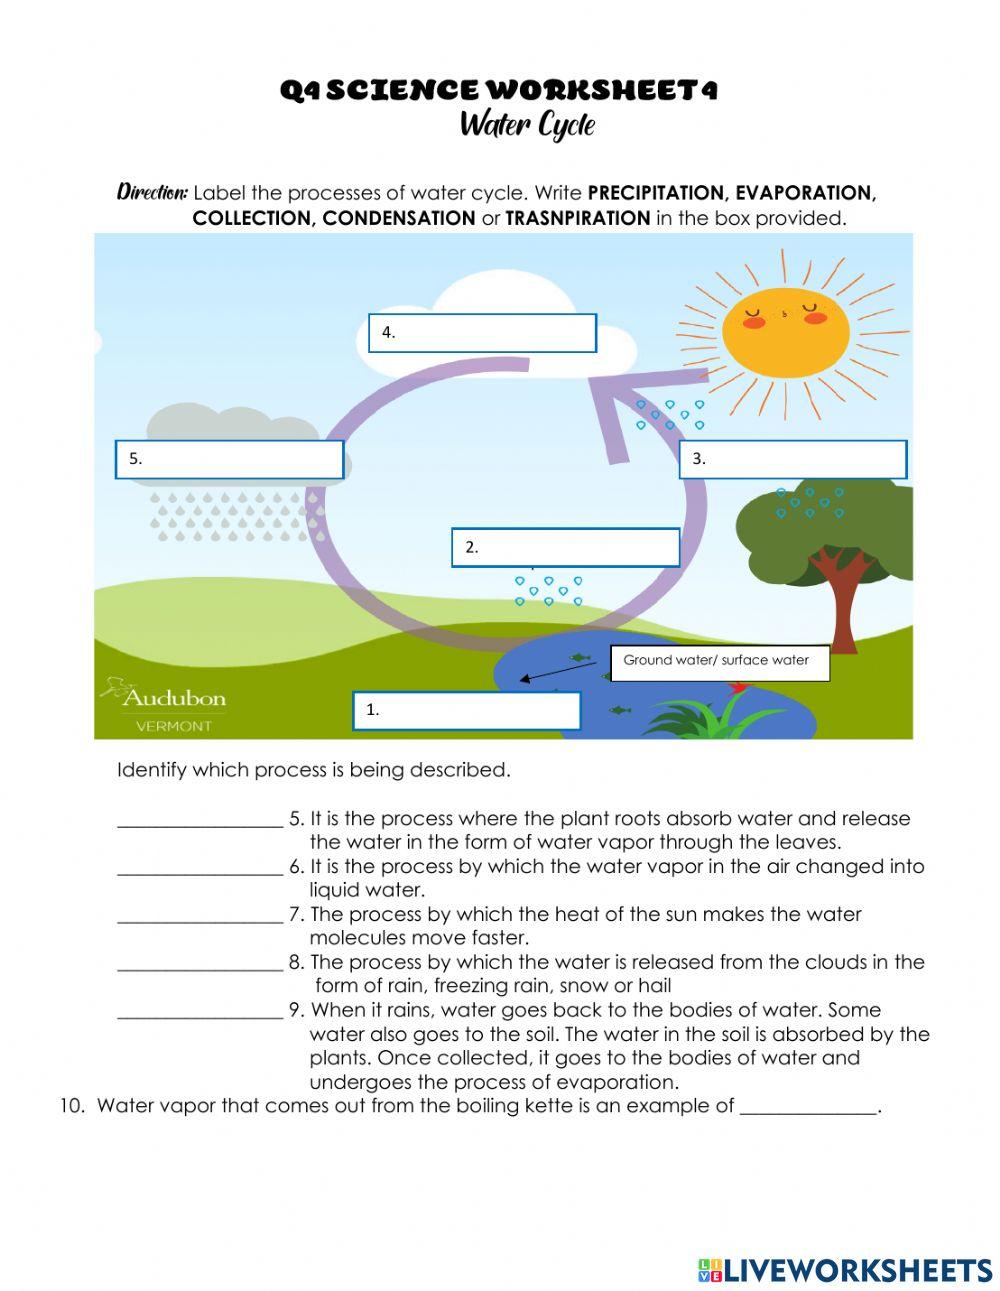 Q4 SCIENCE Worksheet 4 Water Cycle